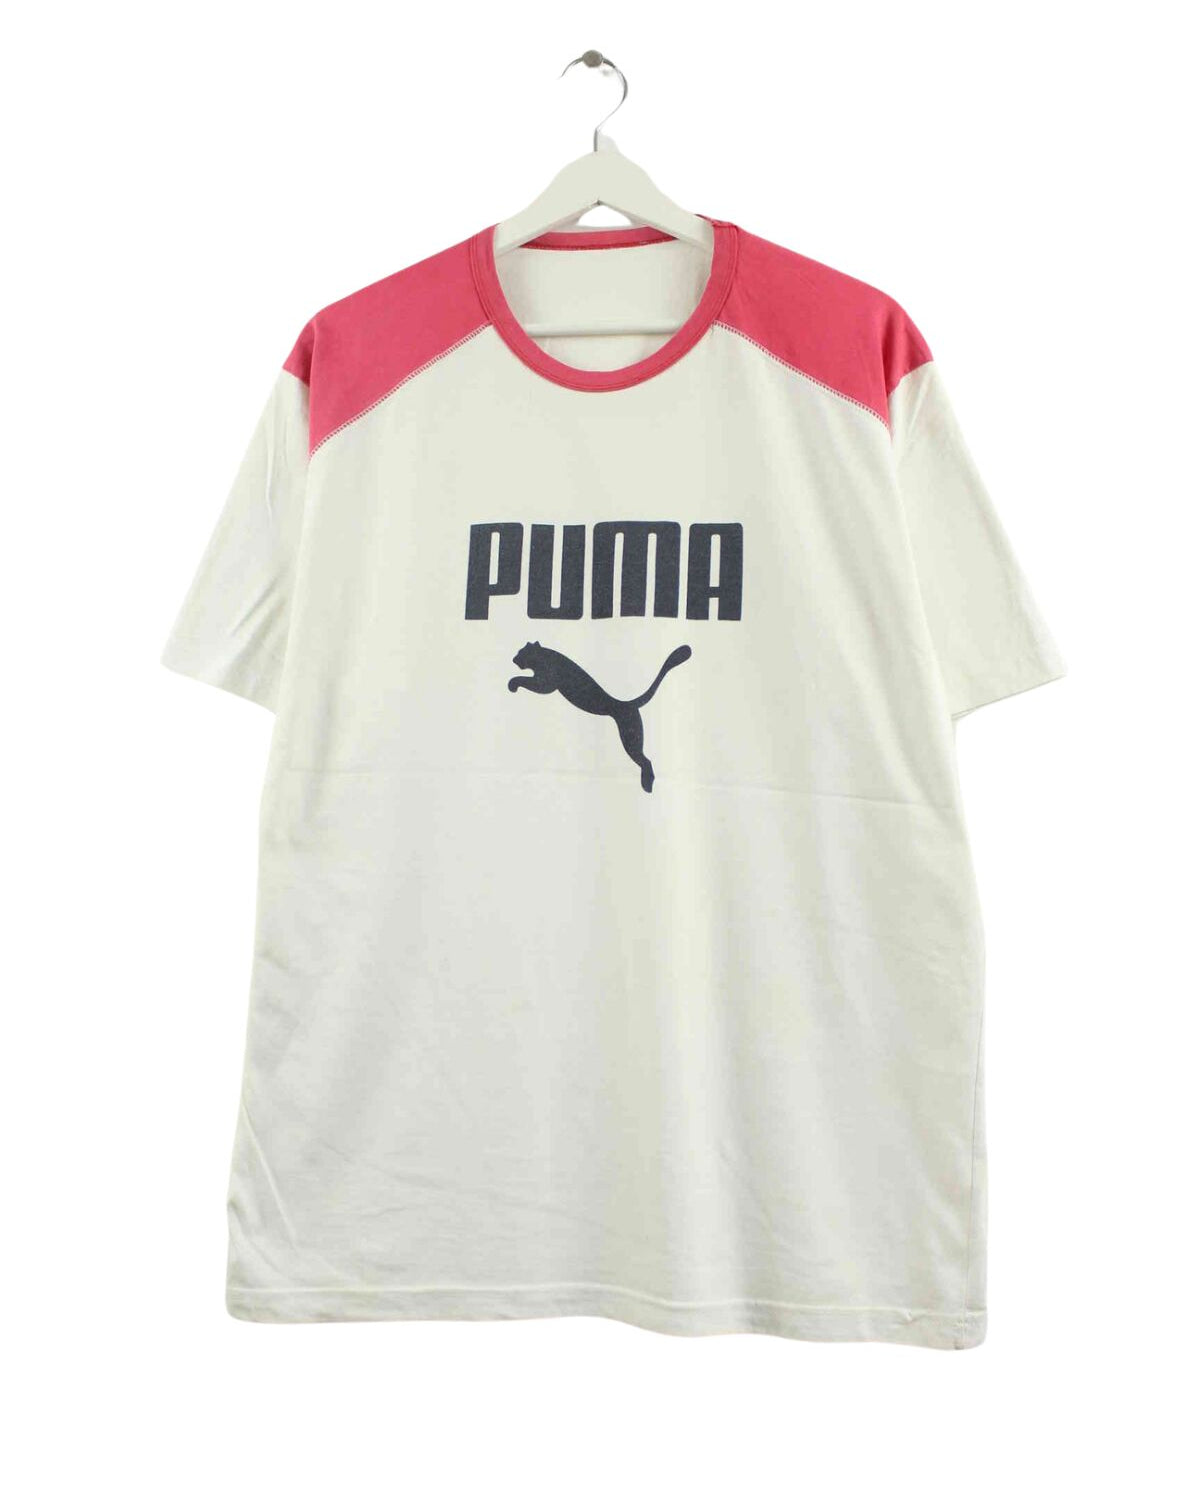 Puma Print T-Shirt Weiß L (front image)